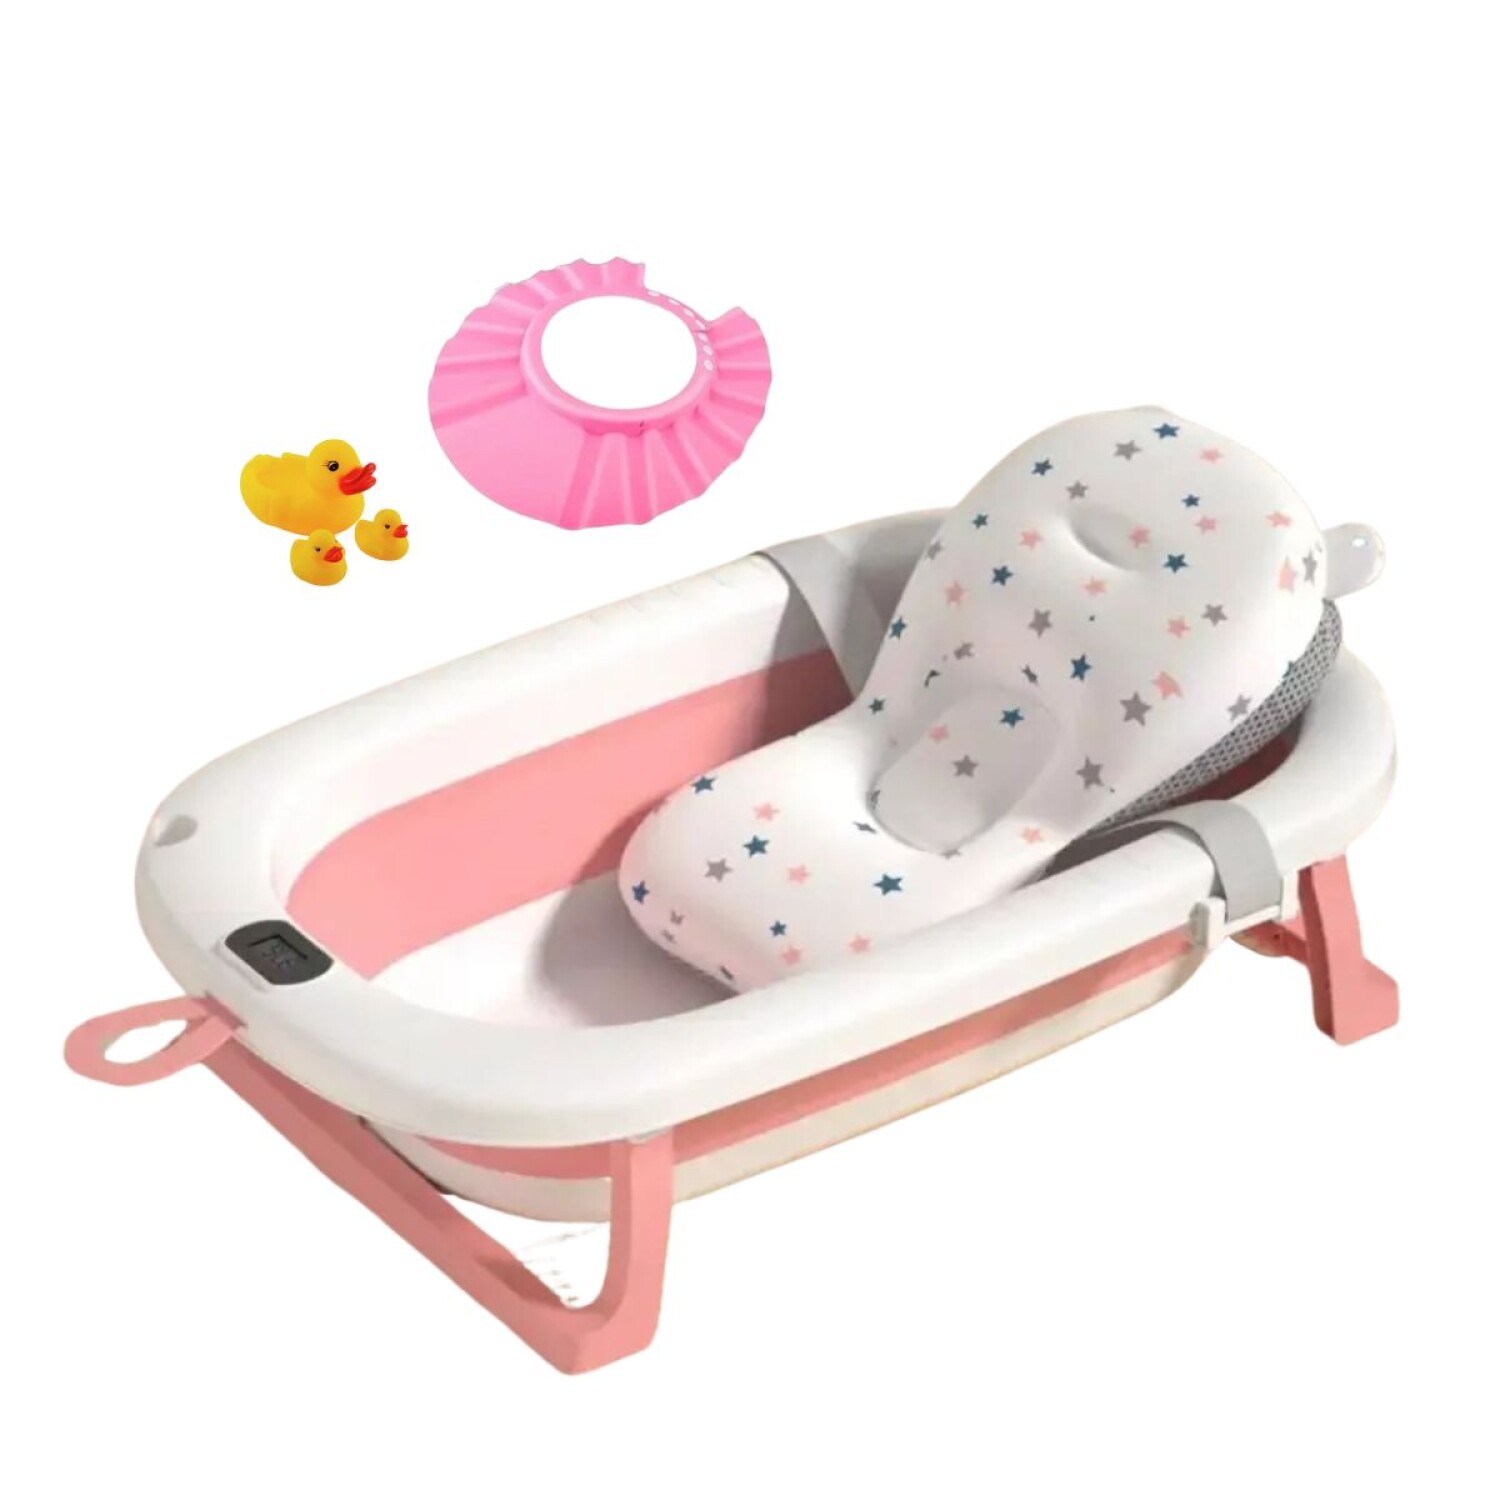 Bañera Bebé Plegable - Bañeras para bebés y bañeras de viaje color azul